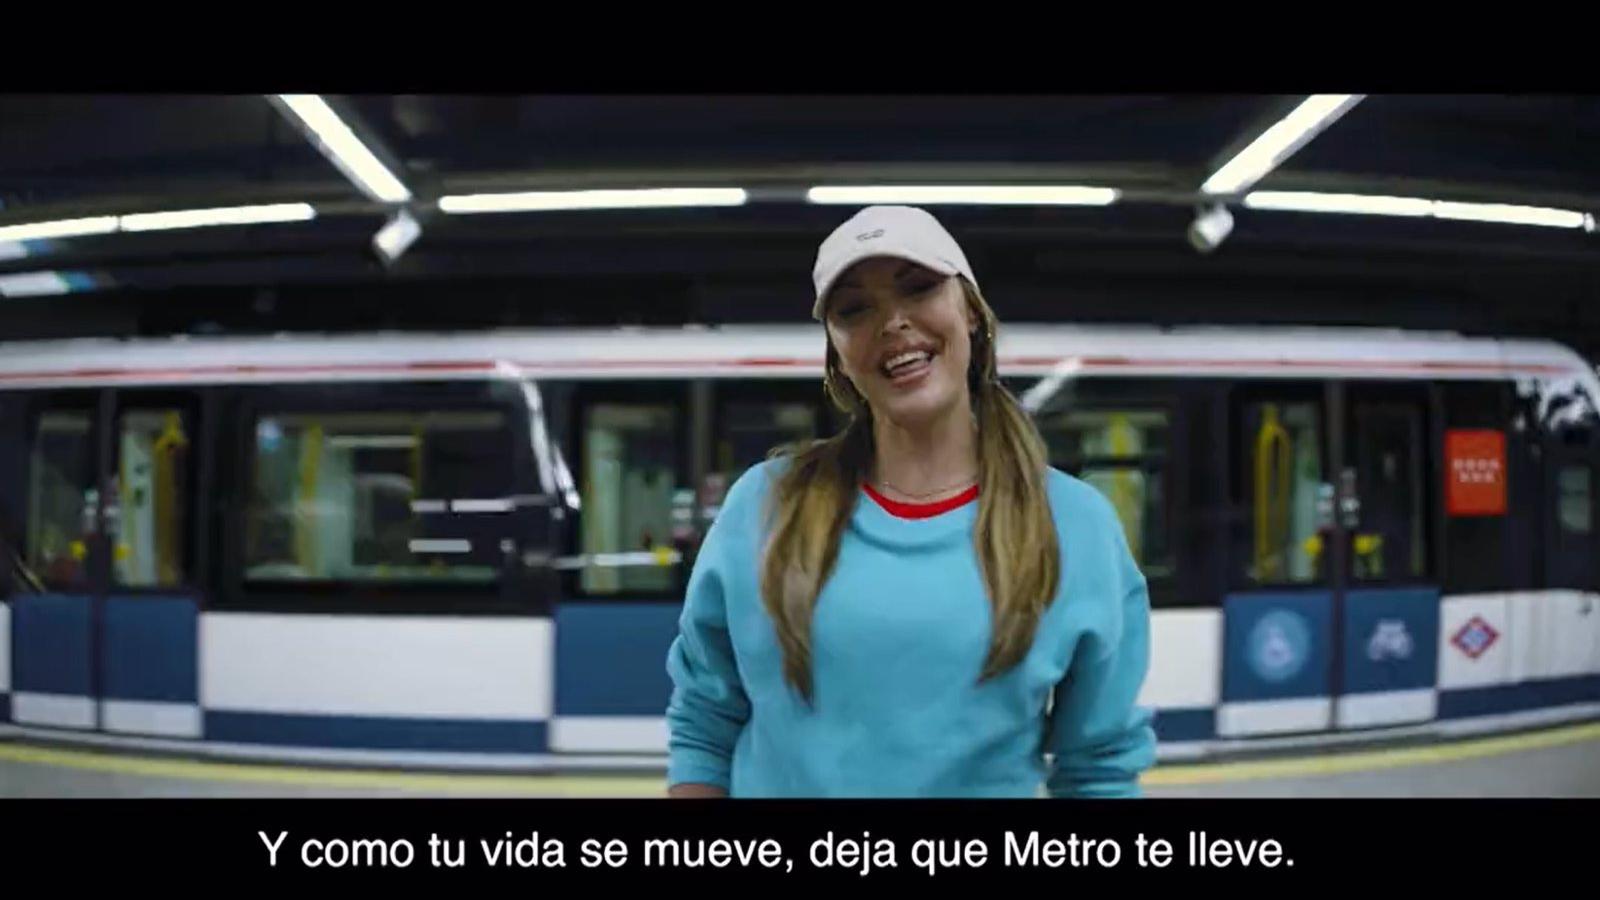 La Comunidad invita a ritmo de rap a los madrileños a dejarse llevar por Metro en una nueva campaña publicitaria